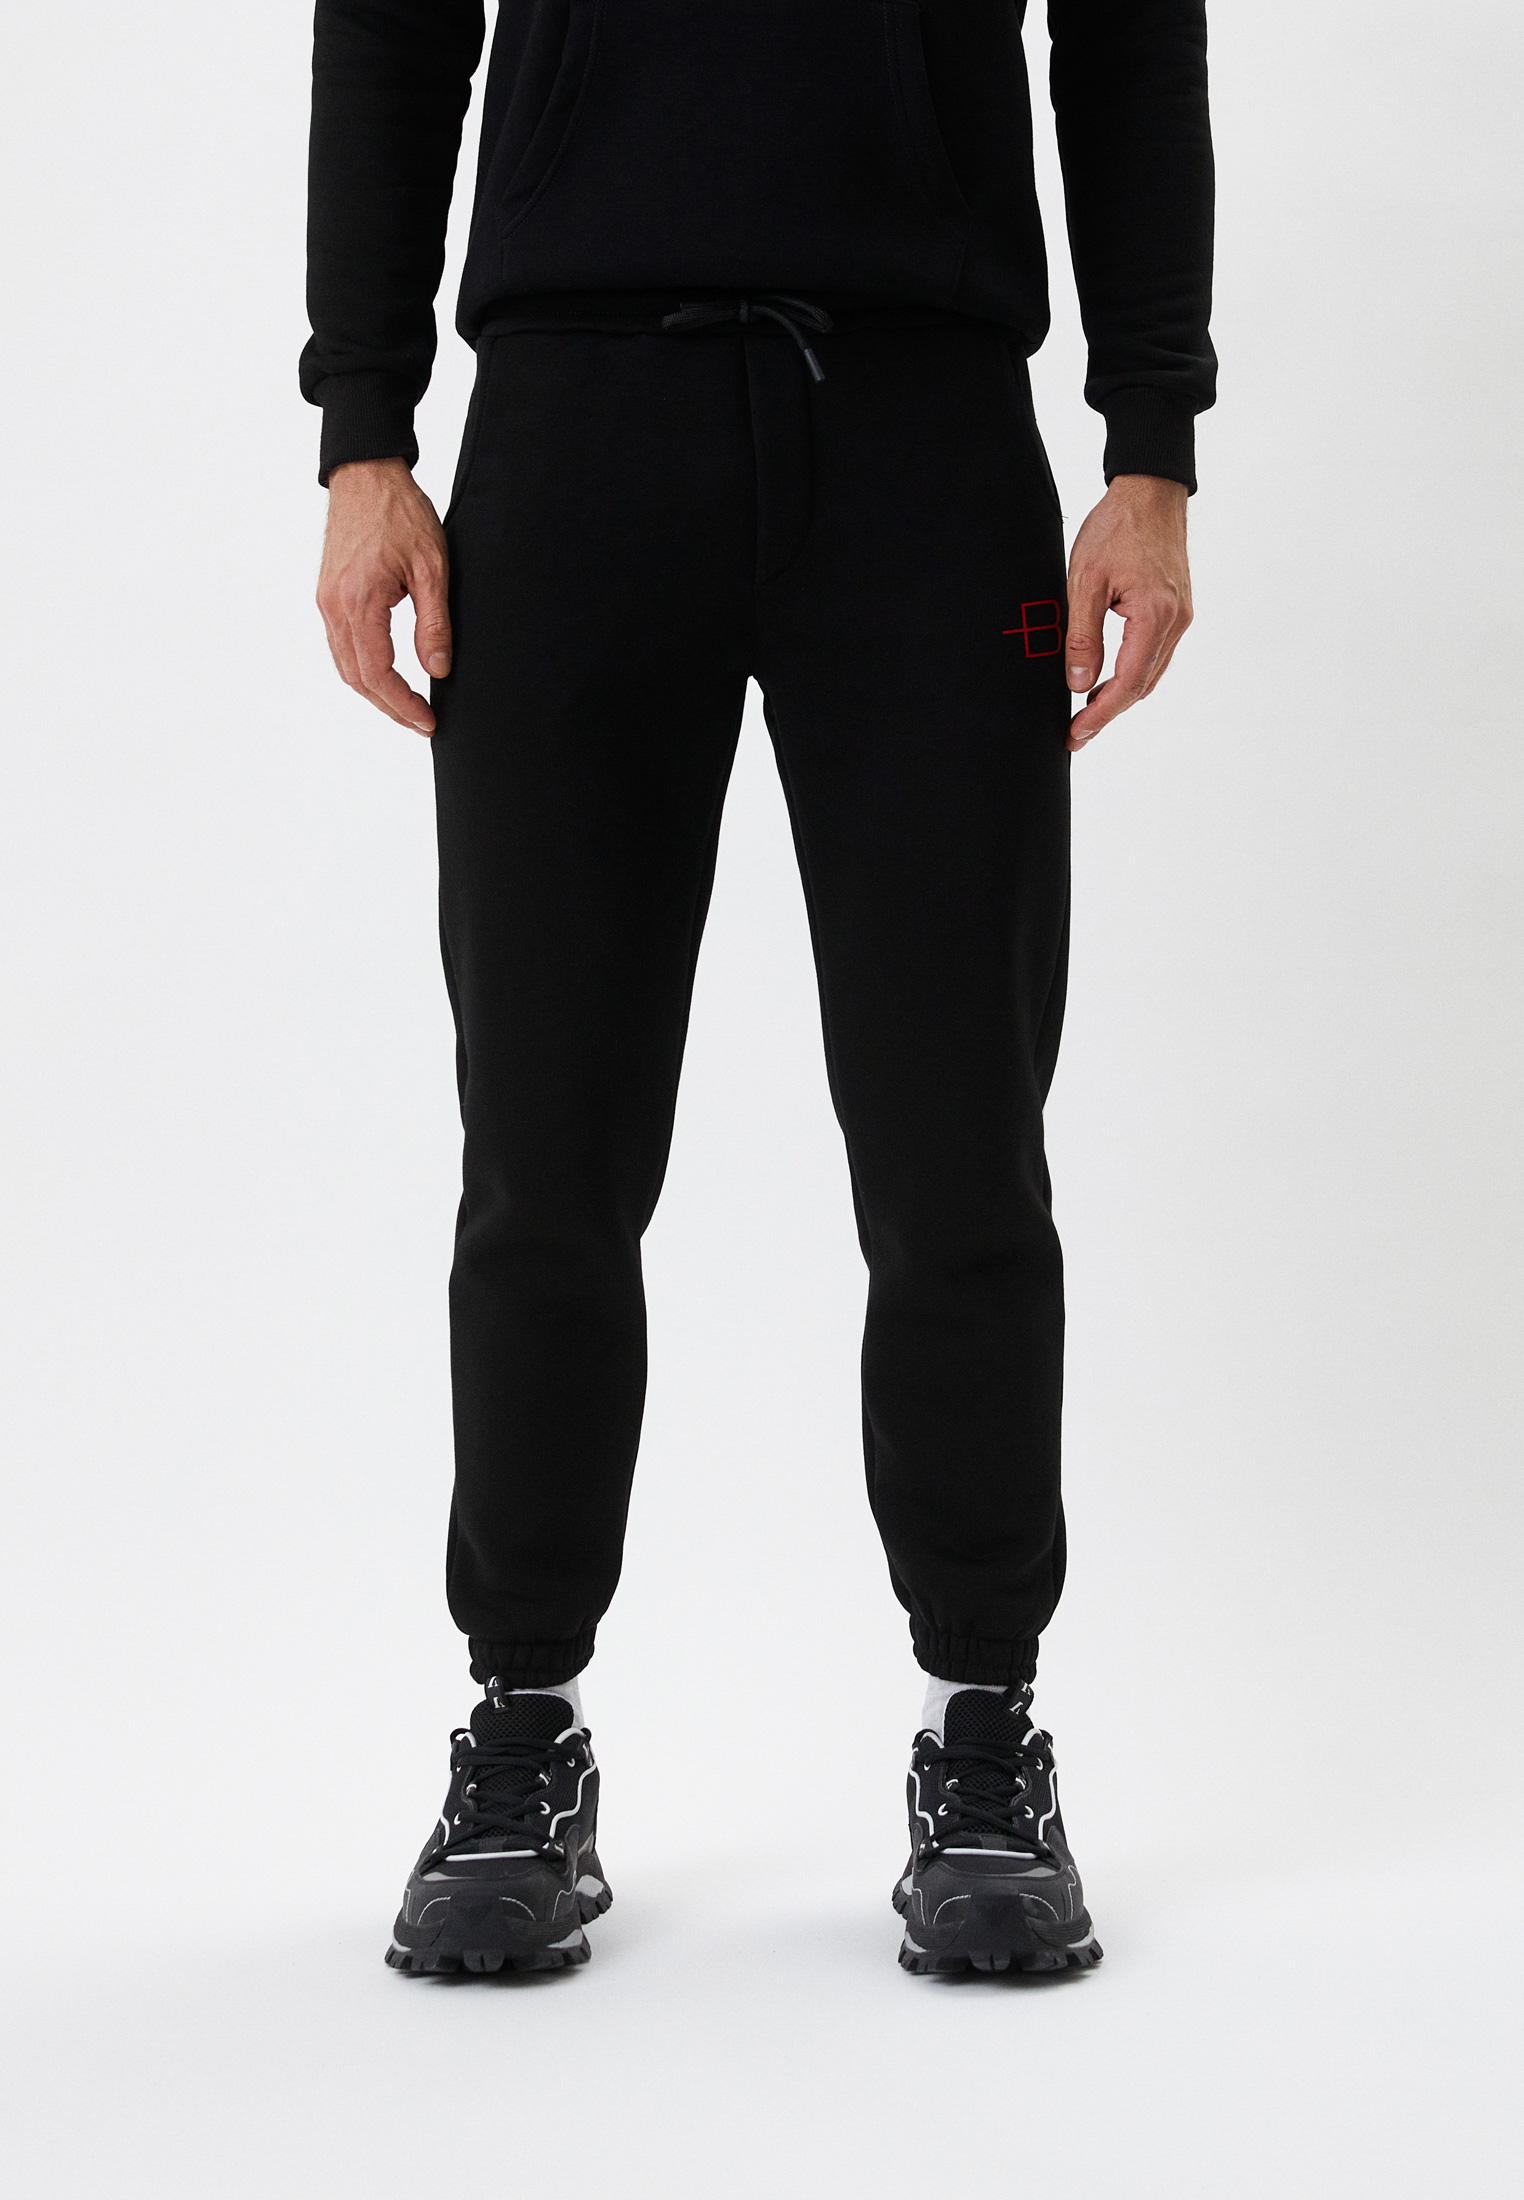 Мужские спортивные брюки Baldinini (Балдинини) BDO-M040: изображение 1